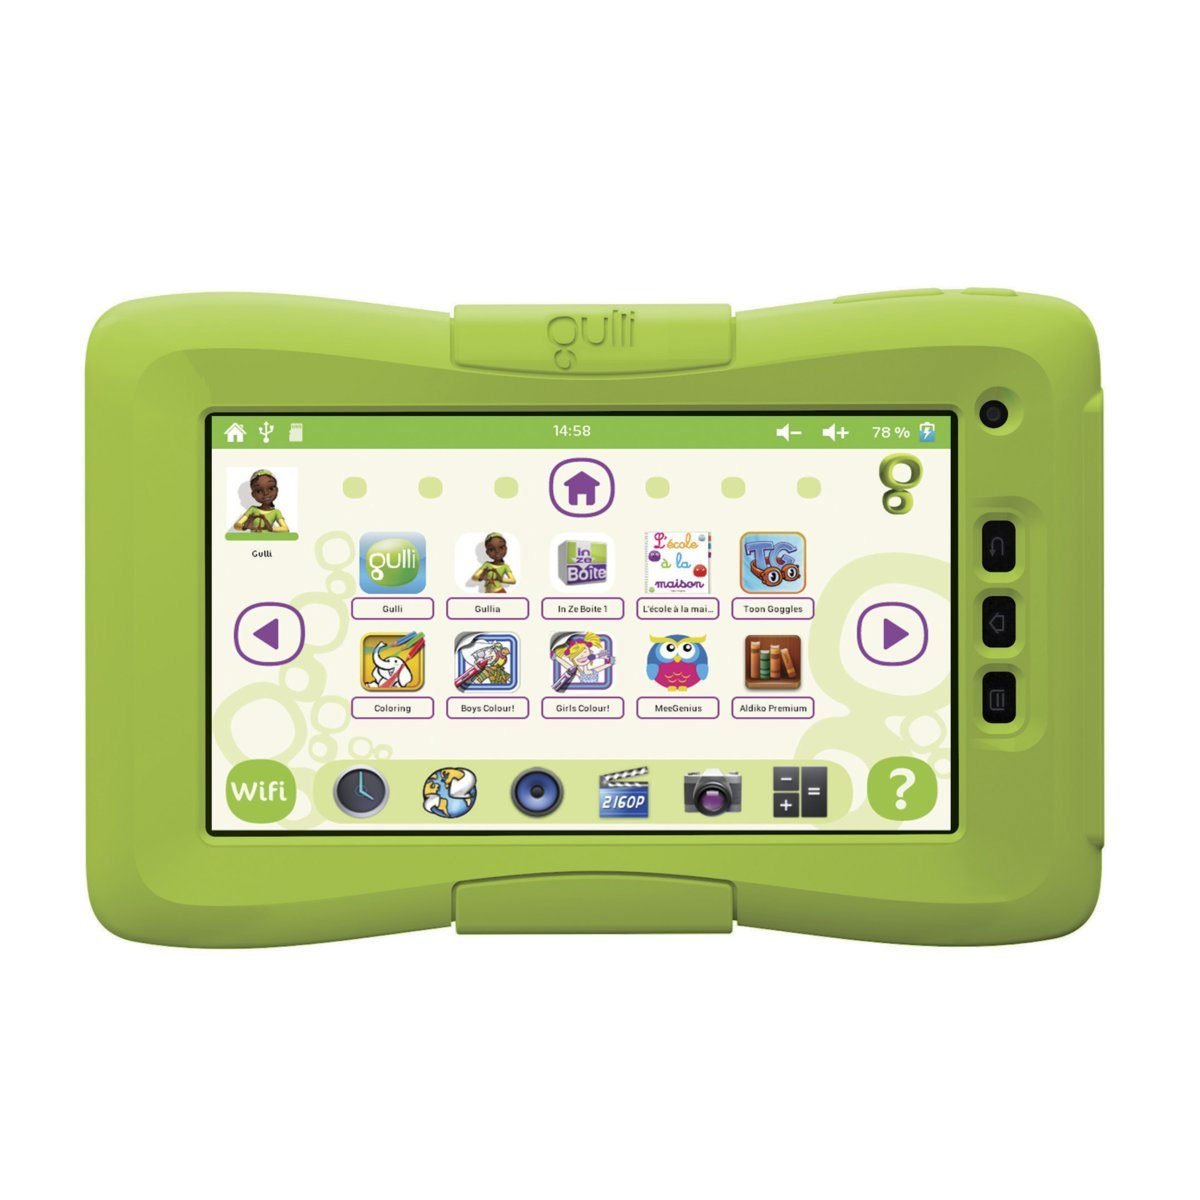 La Gulli Tab, une tablette Android pour les enfants